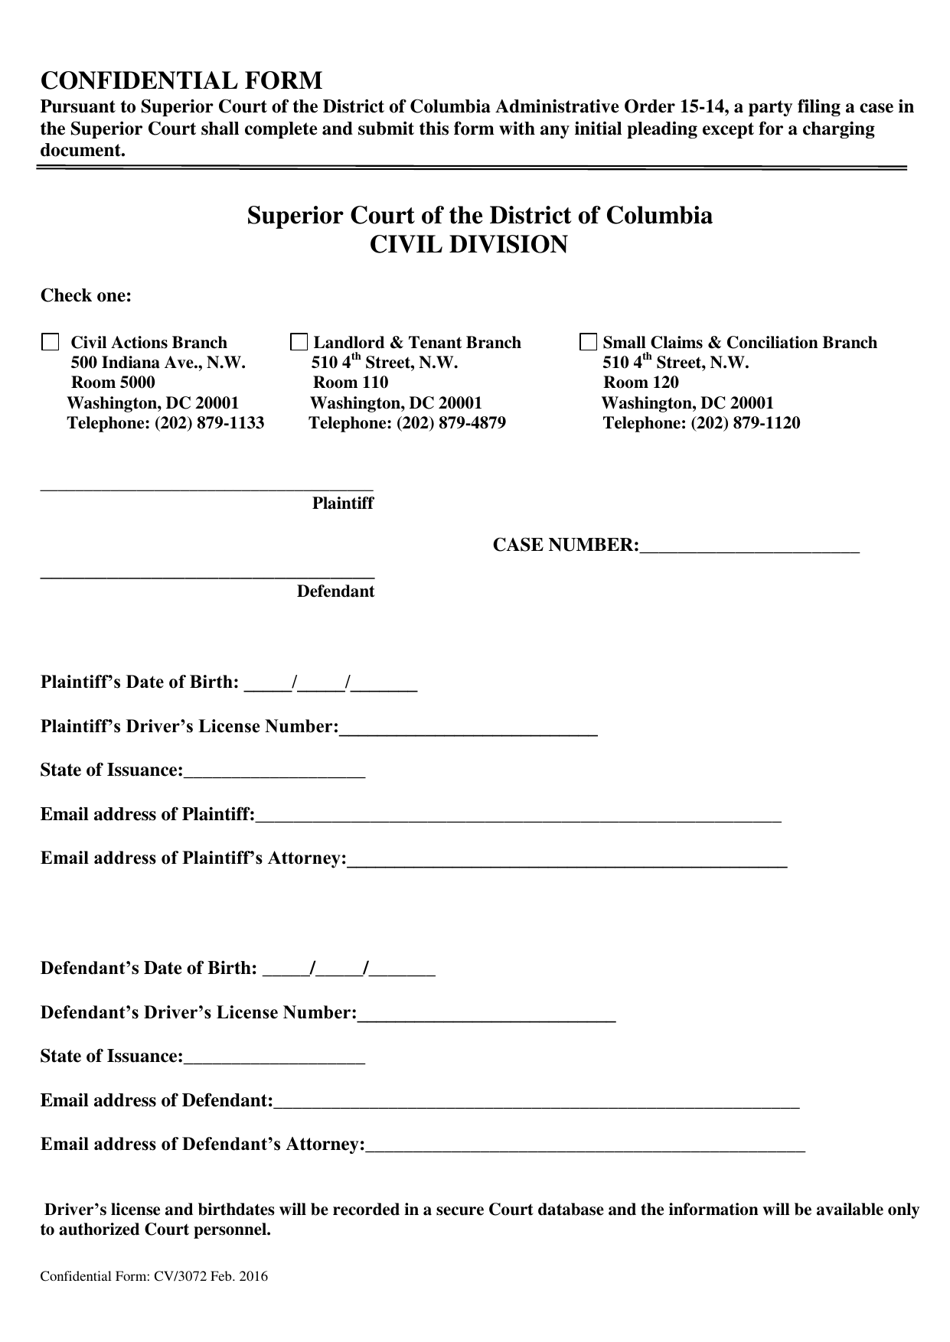 Form CV / 3072 Confidential Form - Washington, D.C., Page 1